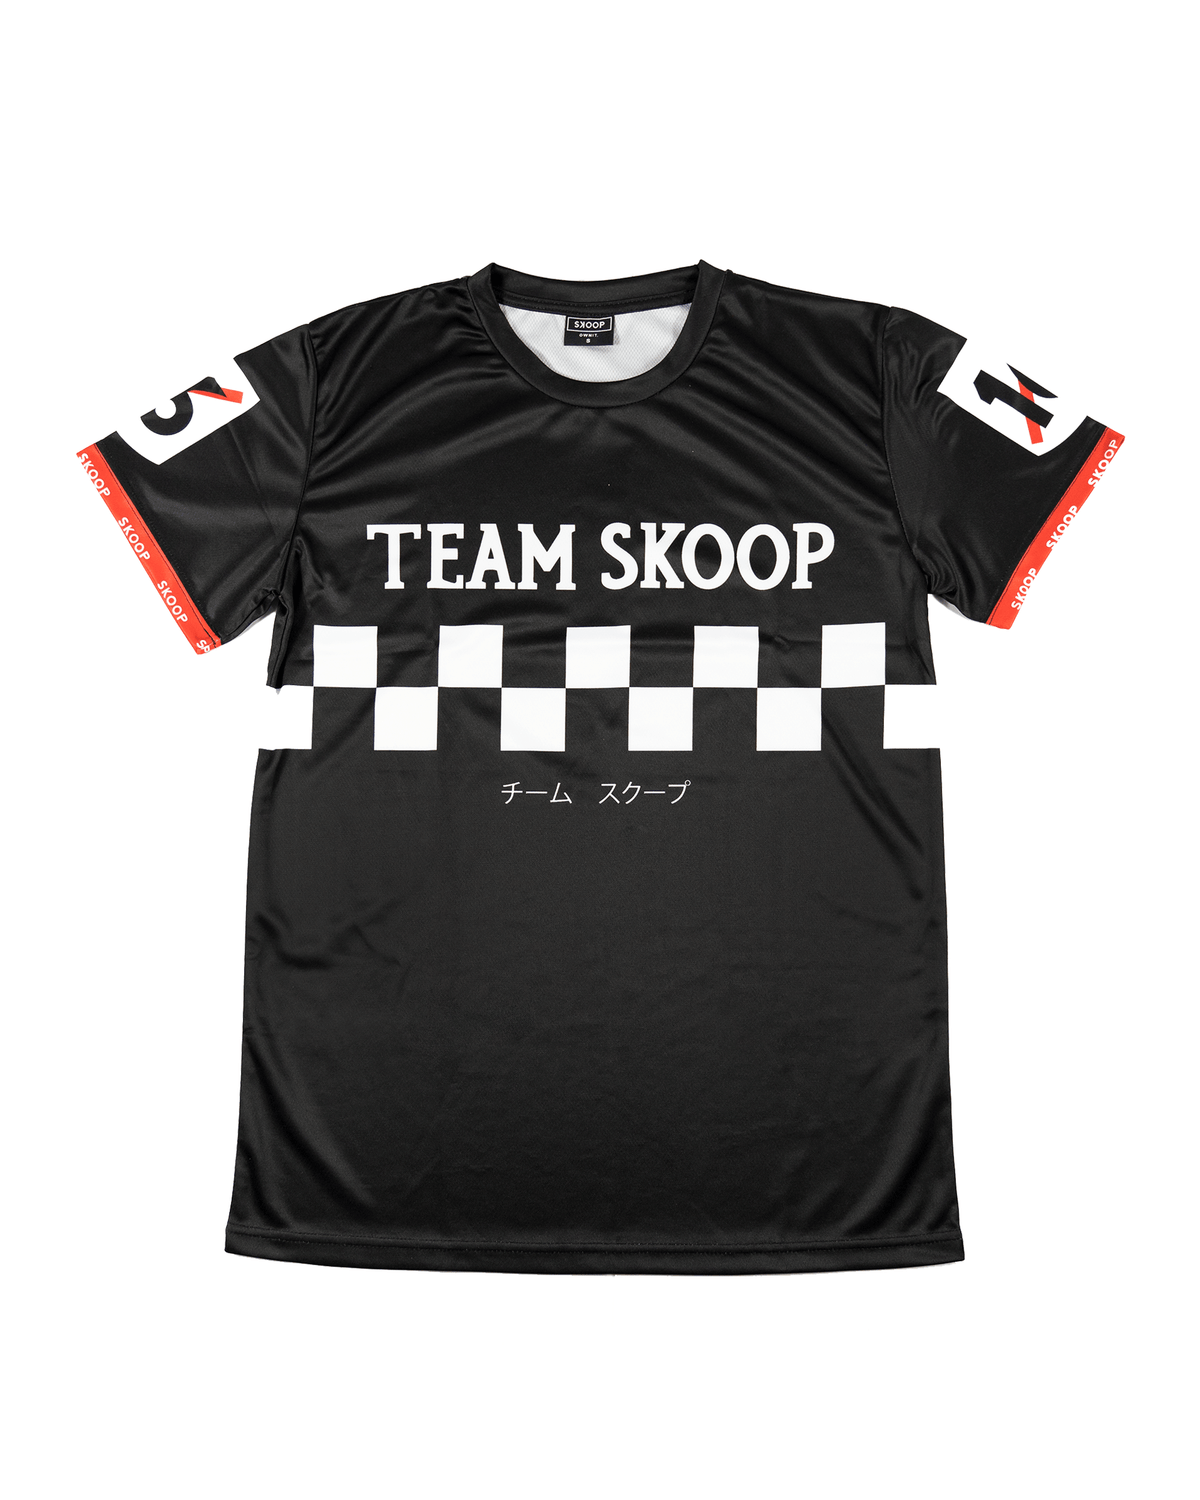 Team Skoop Cycling Black Jersey - Skoop Kommunity